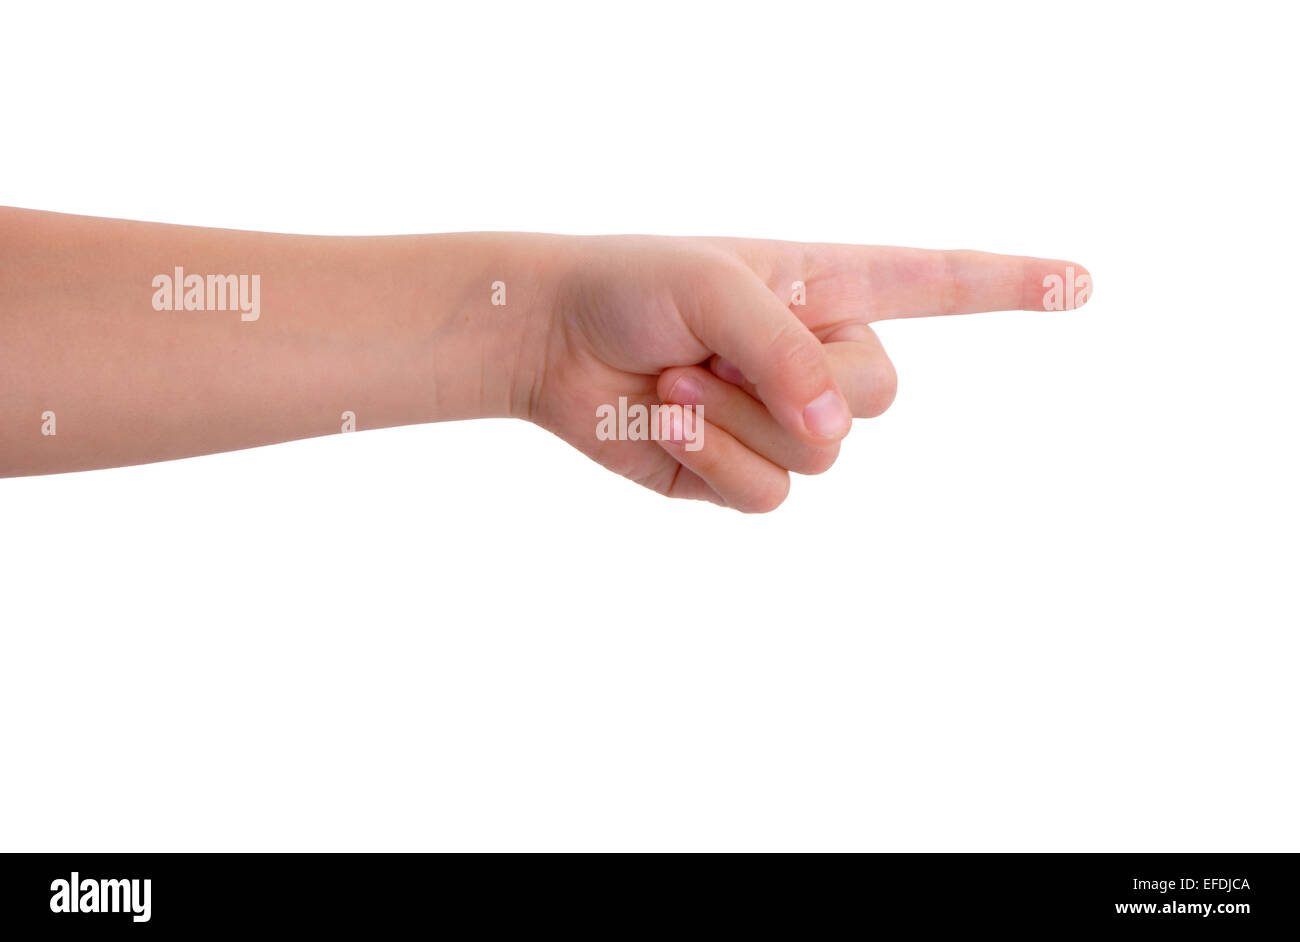 Baby dito indice puntato isolate su sfondo bianco Foto Stock